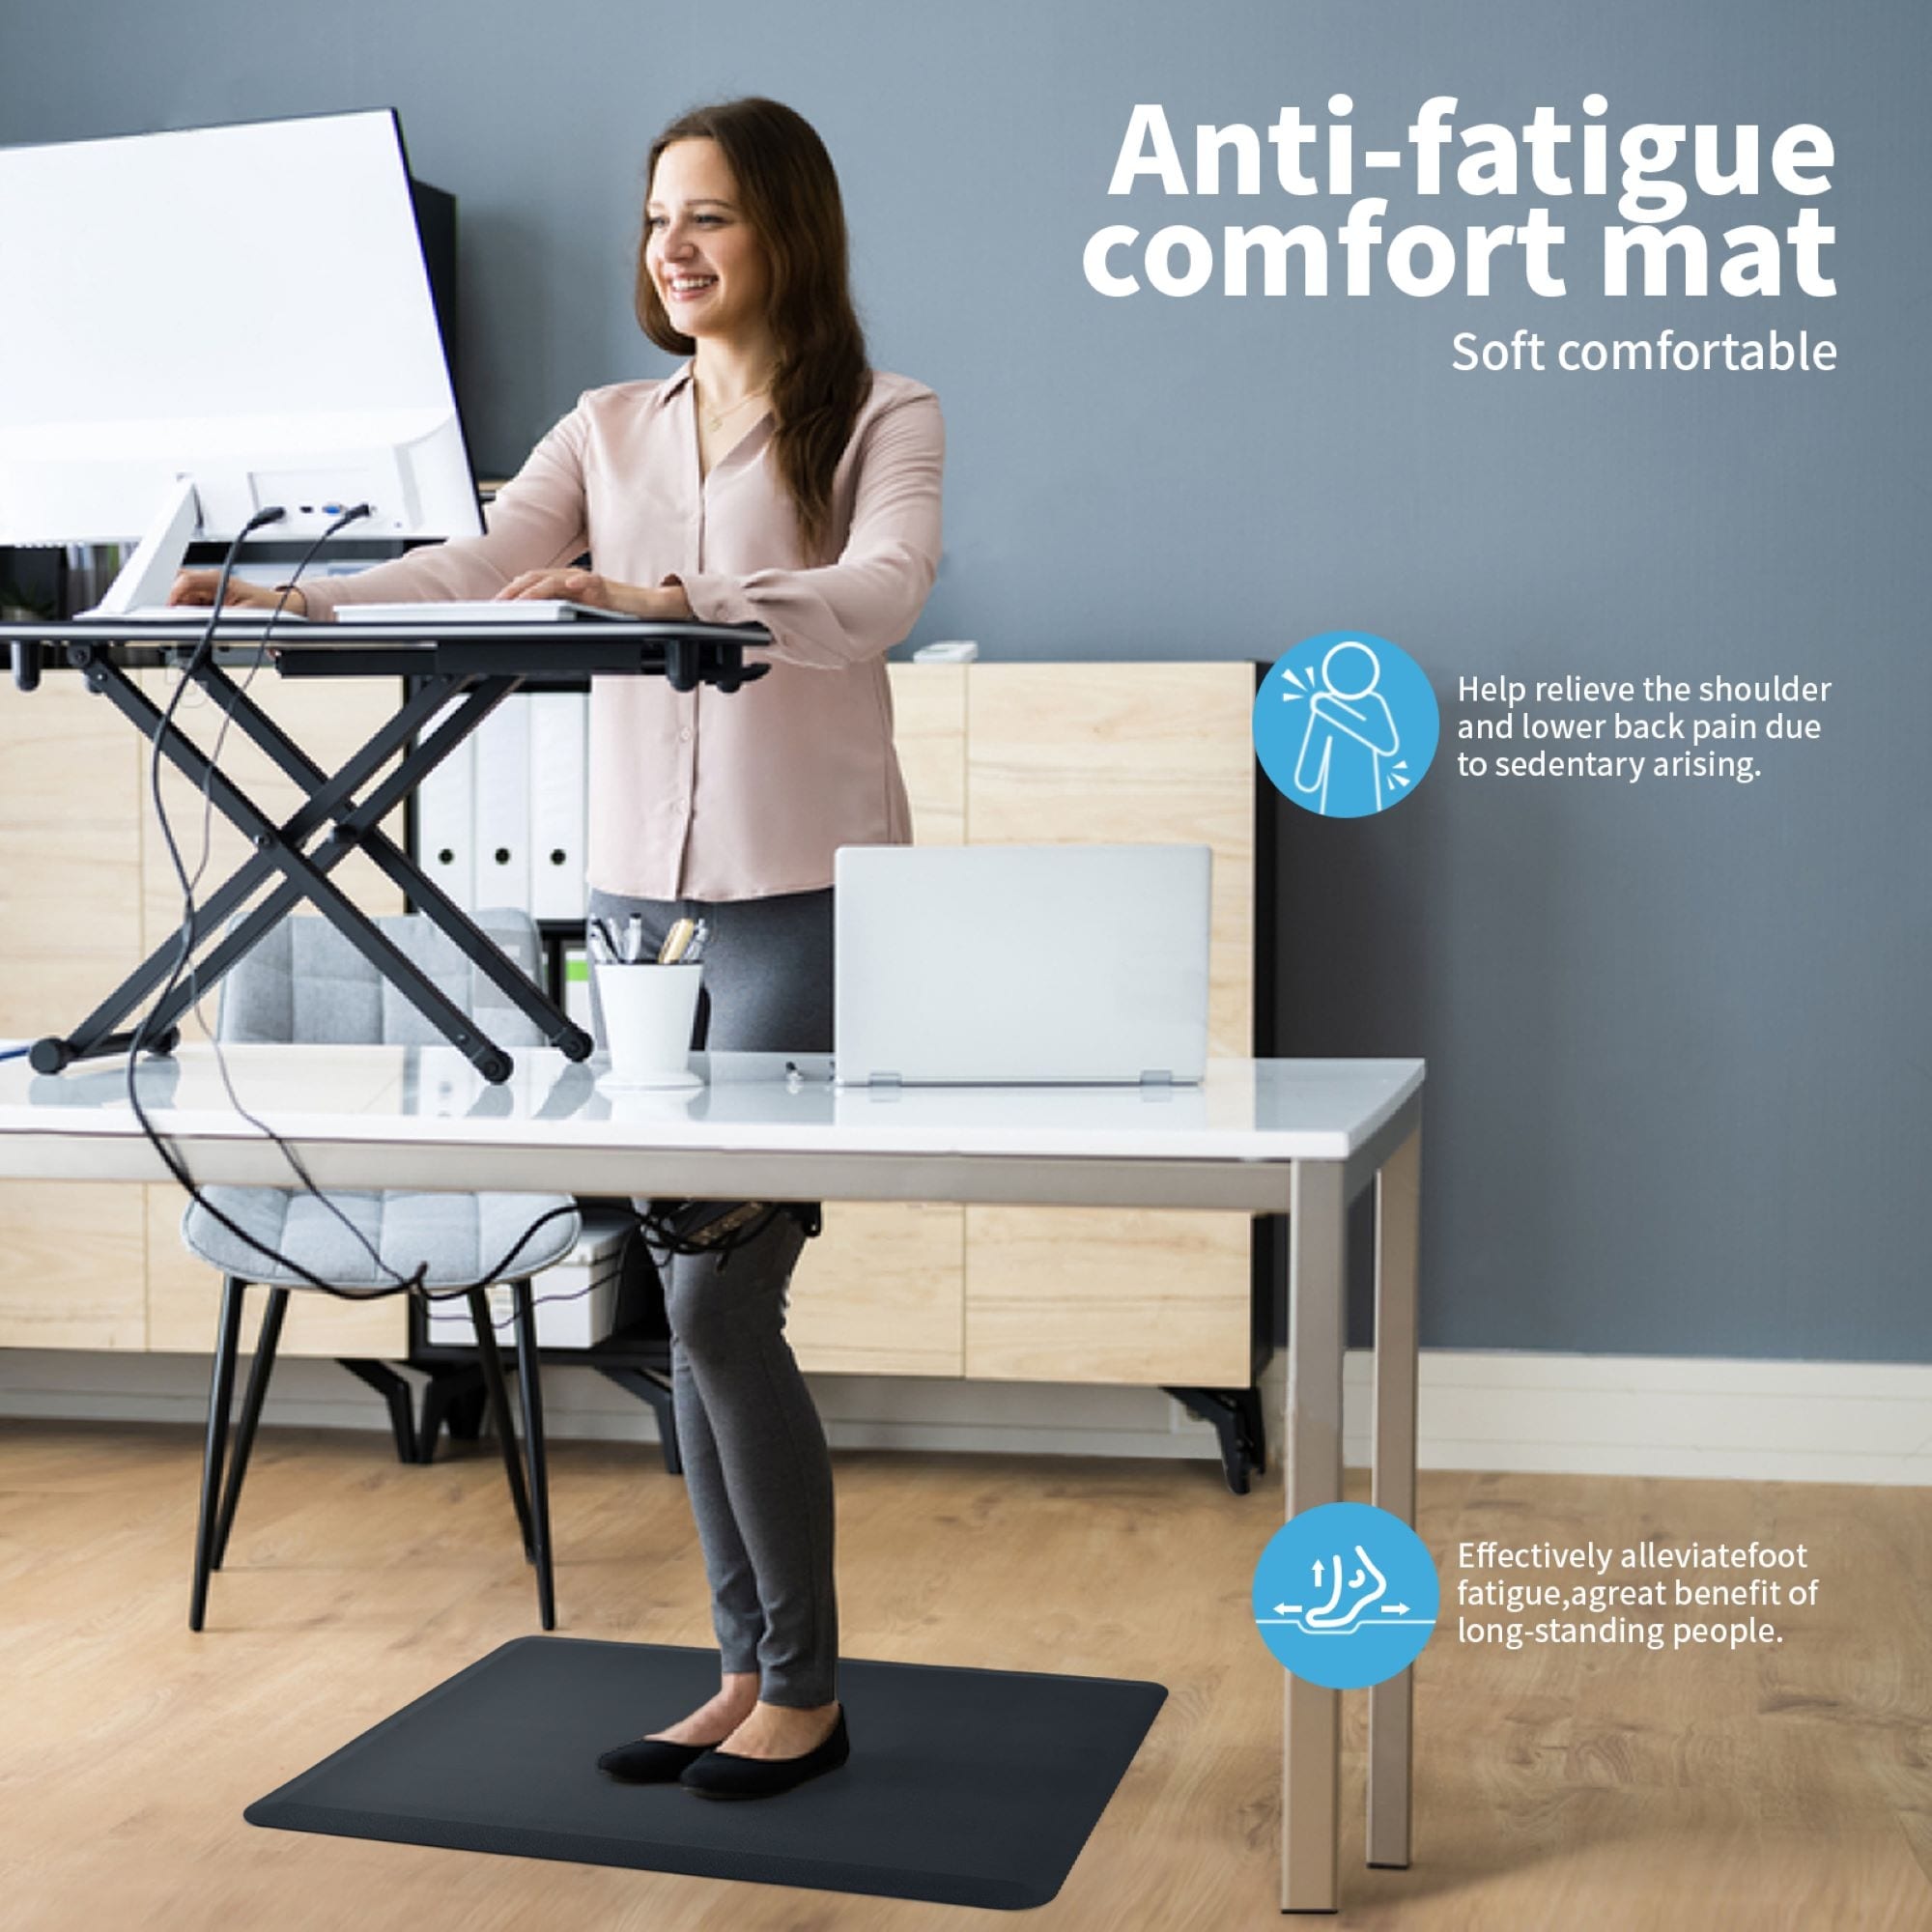 3/4 Thick Non-Slip Premium Anti Fatigue Ergonomic Comfort Floor Mat - Bed  Bath & Beyond - 27279701